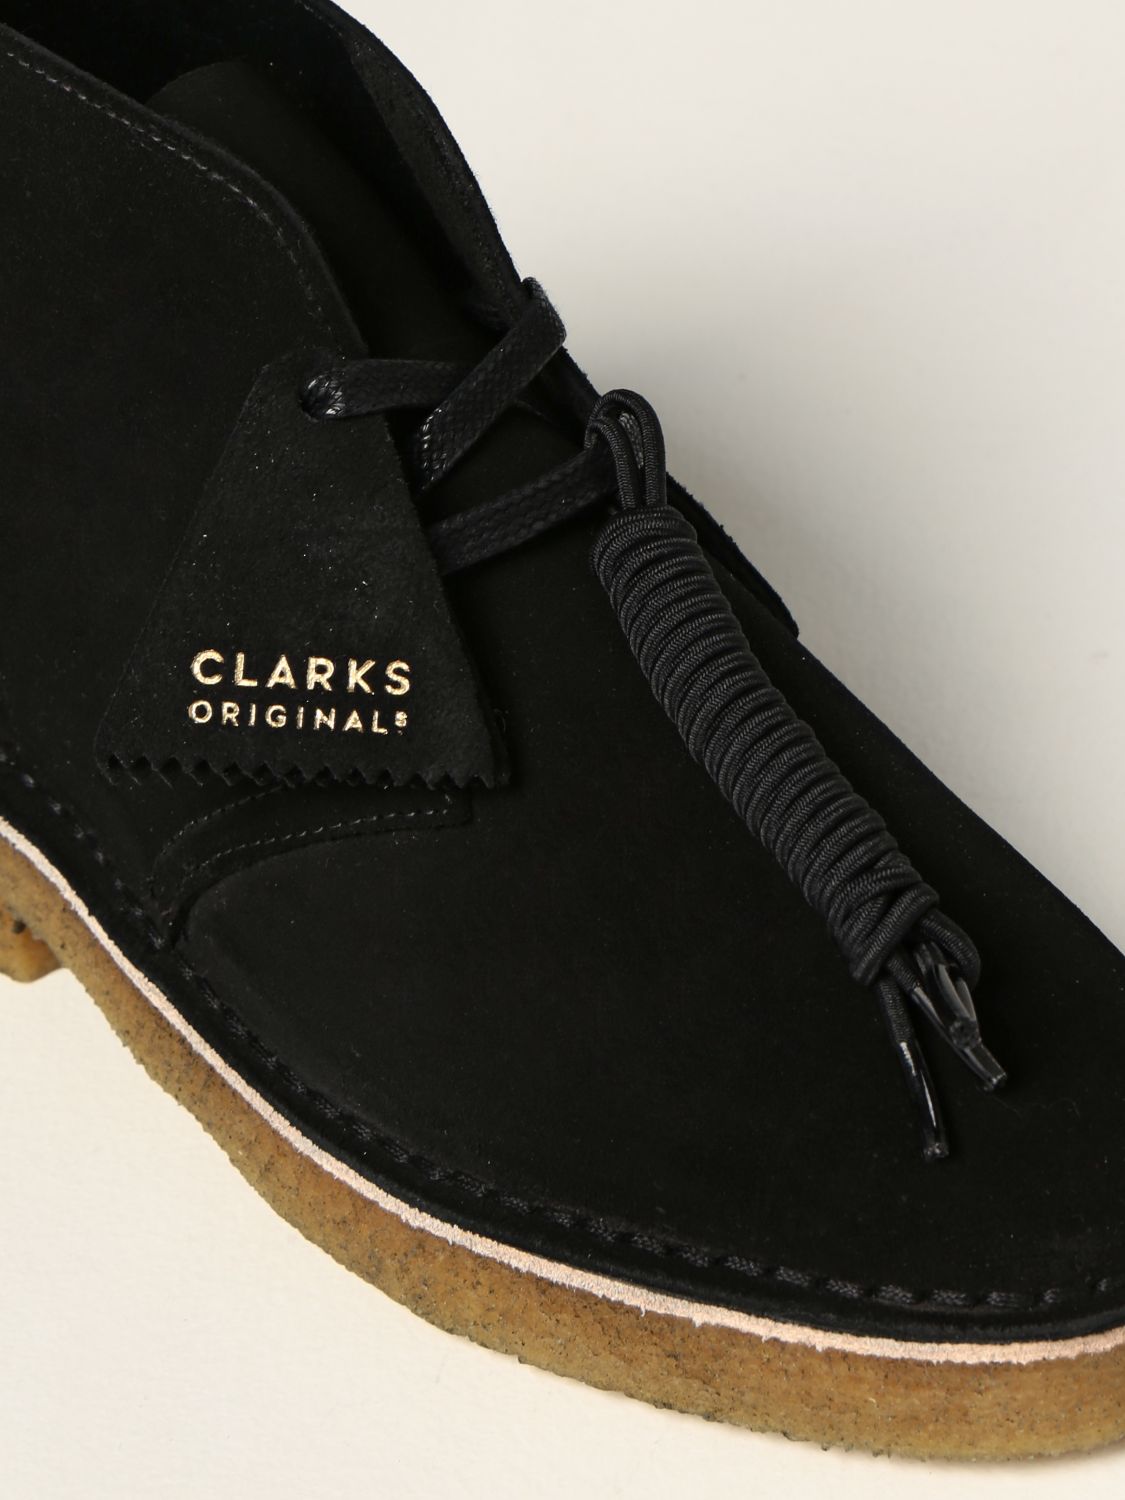 Flat booties Clarks: Desert Boots Clarks Originals in suede black 4